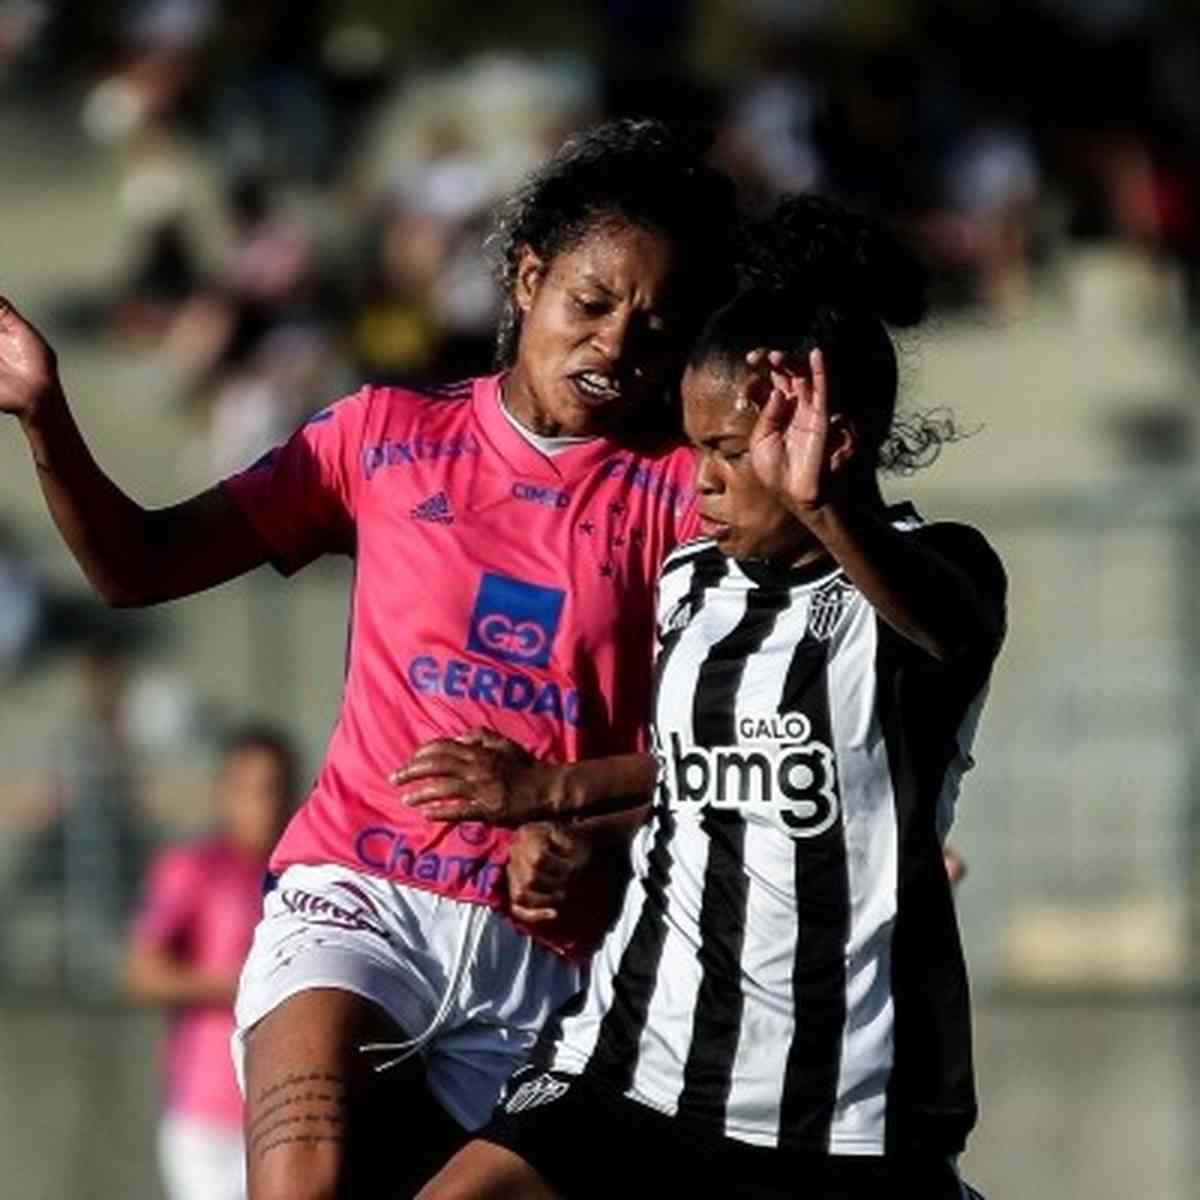 Veja data e horário da final do Mineiro Feminino entre Atlético e Cruzeiro  - Superesportes